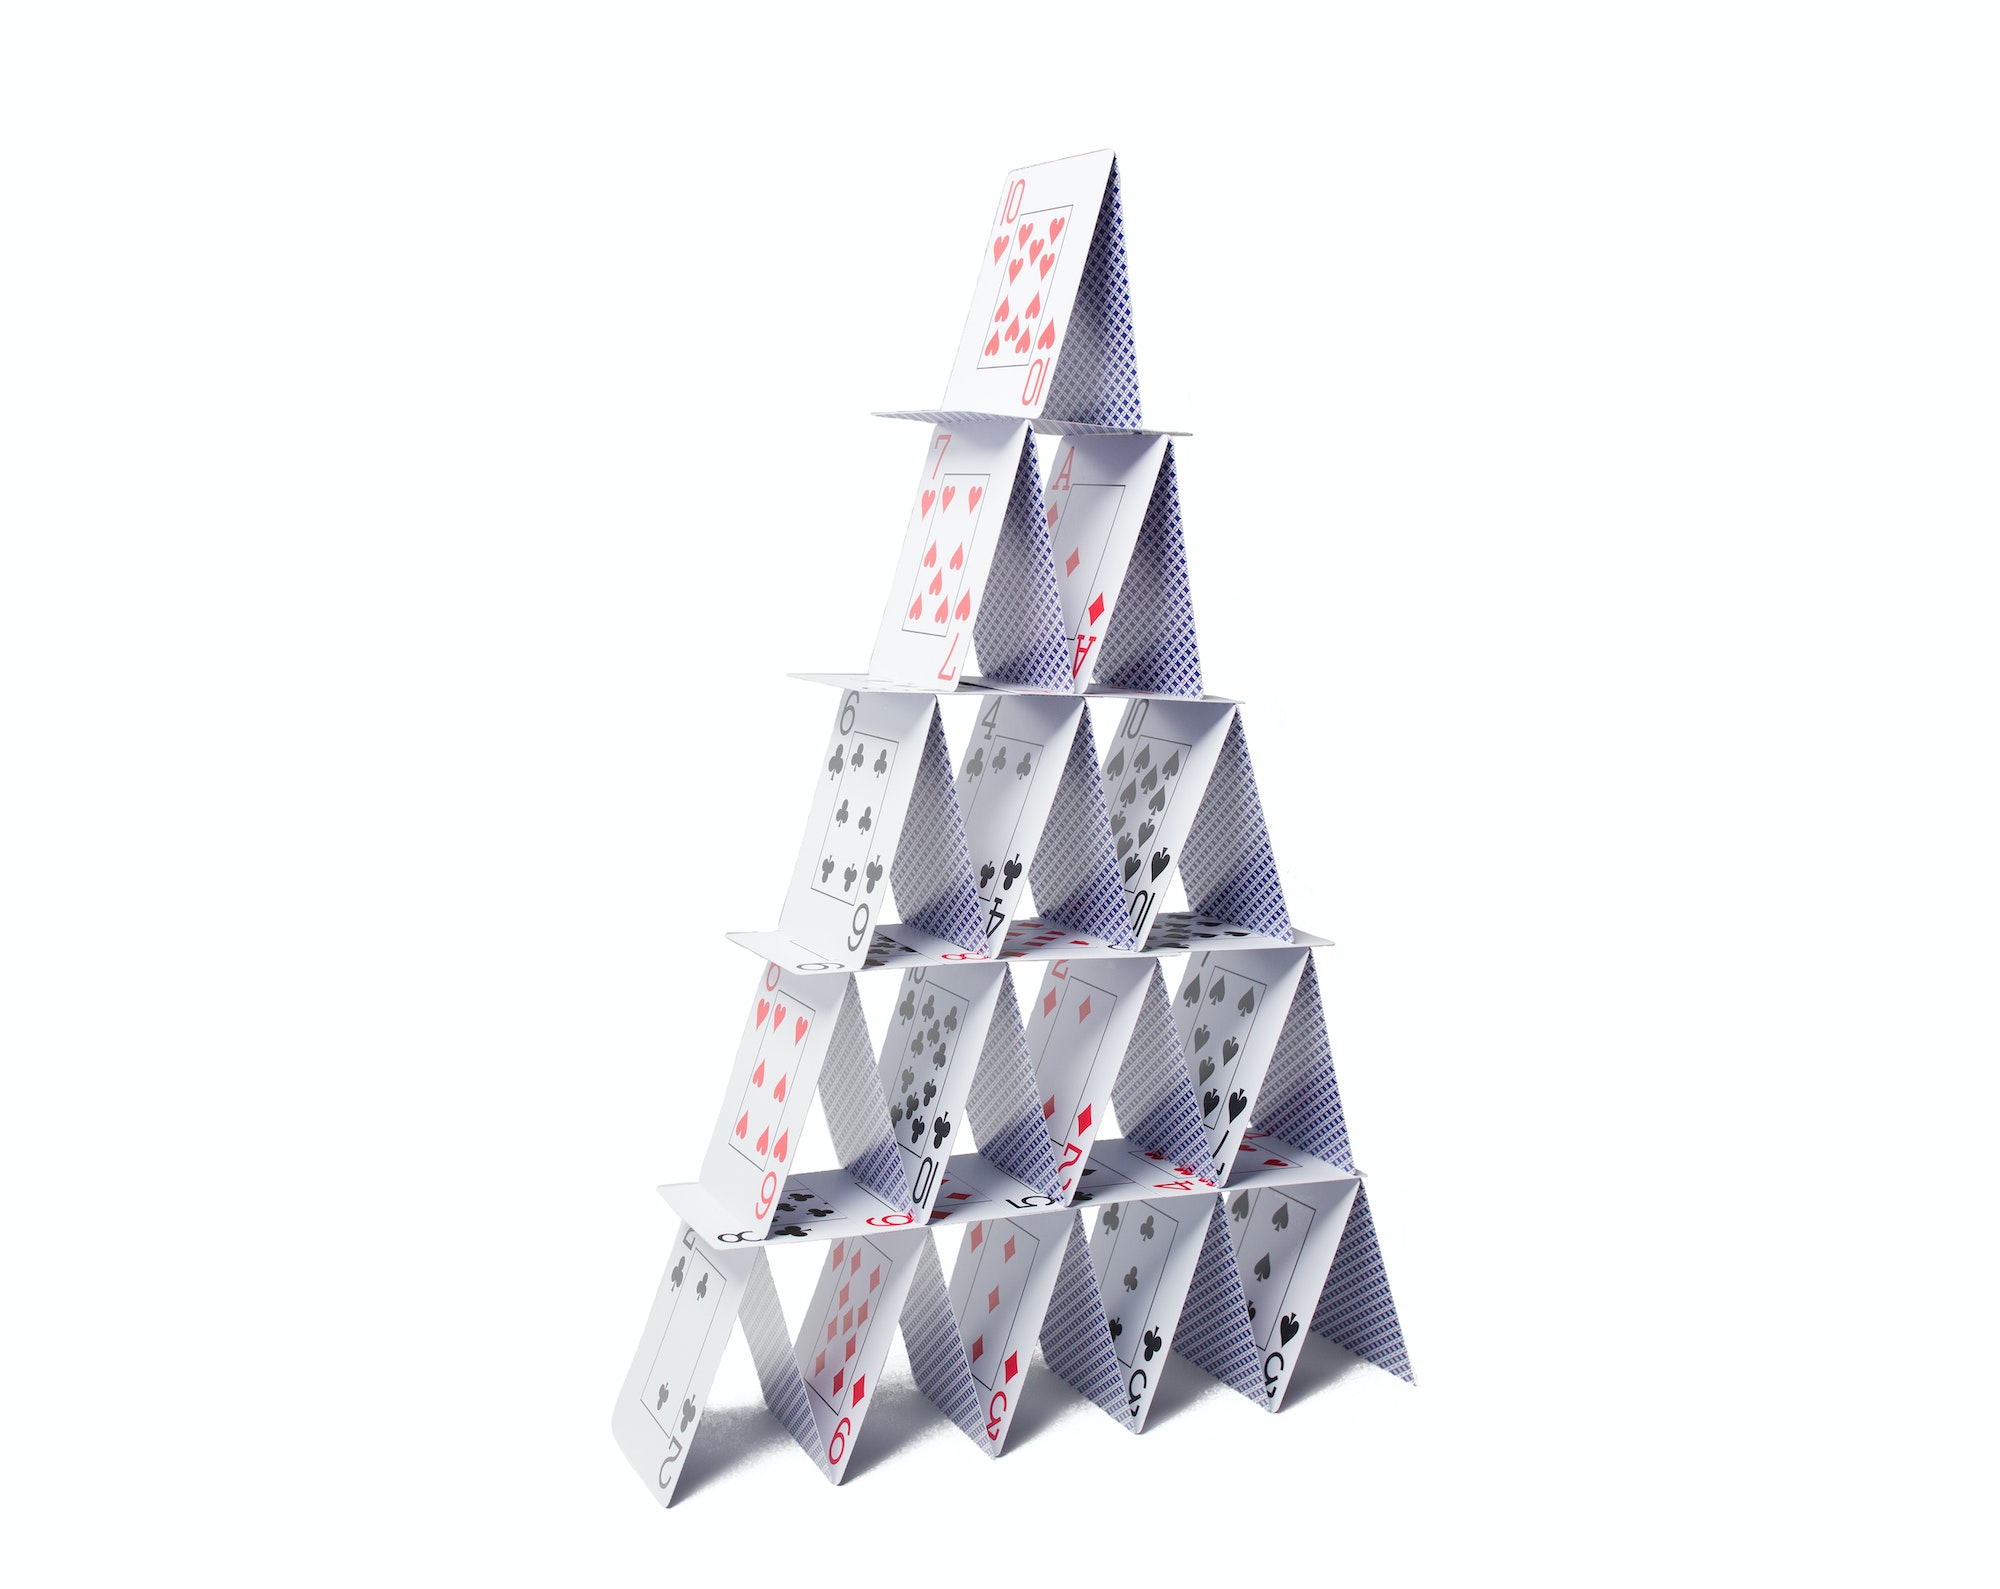 Comment faire un château de cartes ?